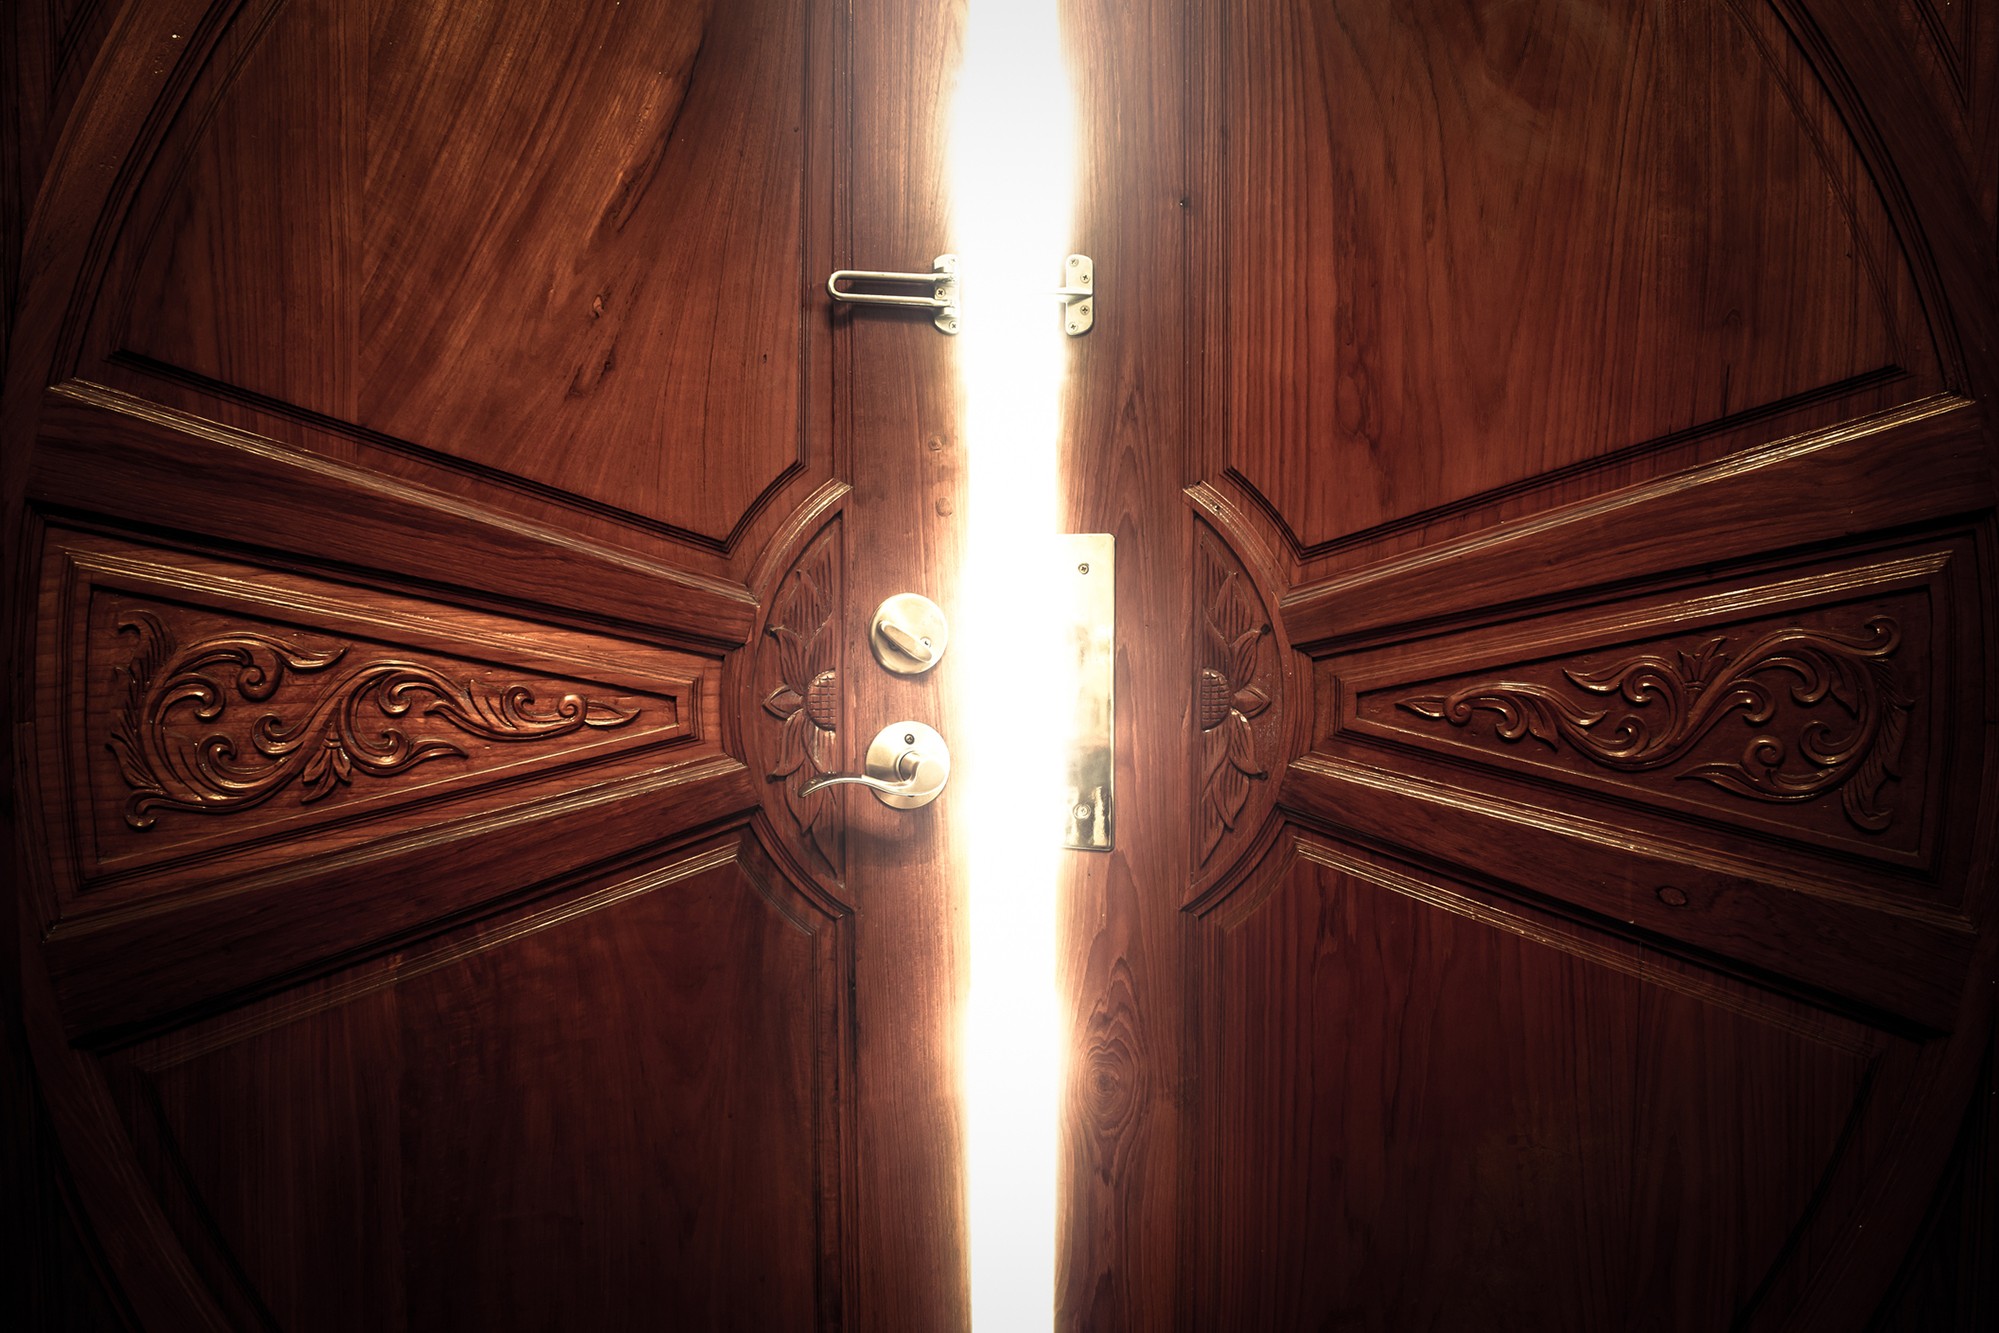 Wooden door slightly ajar